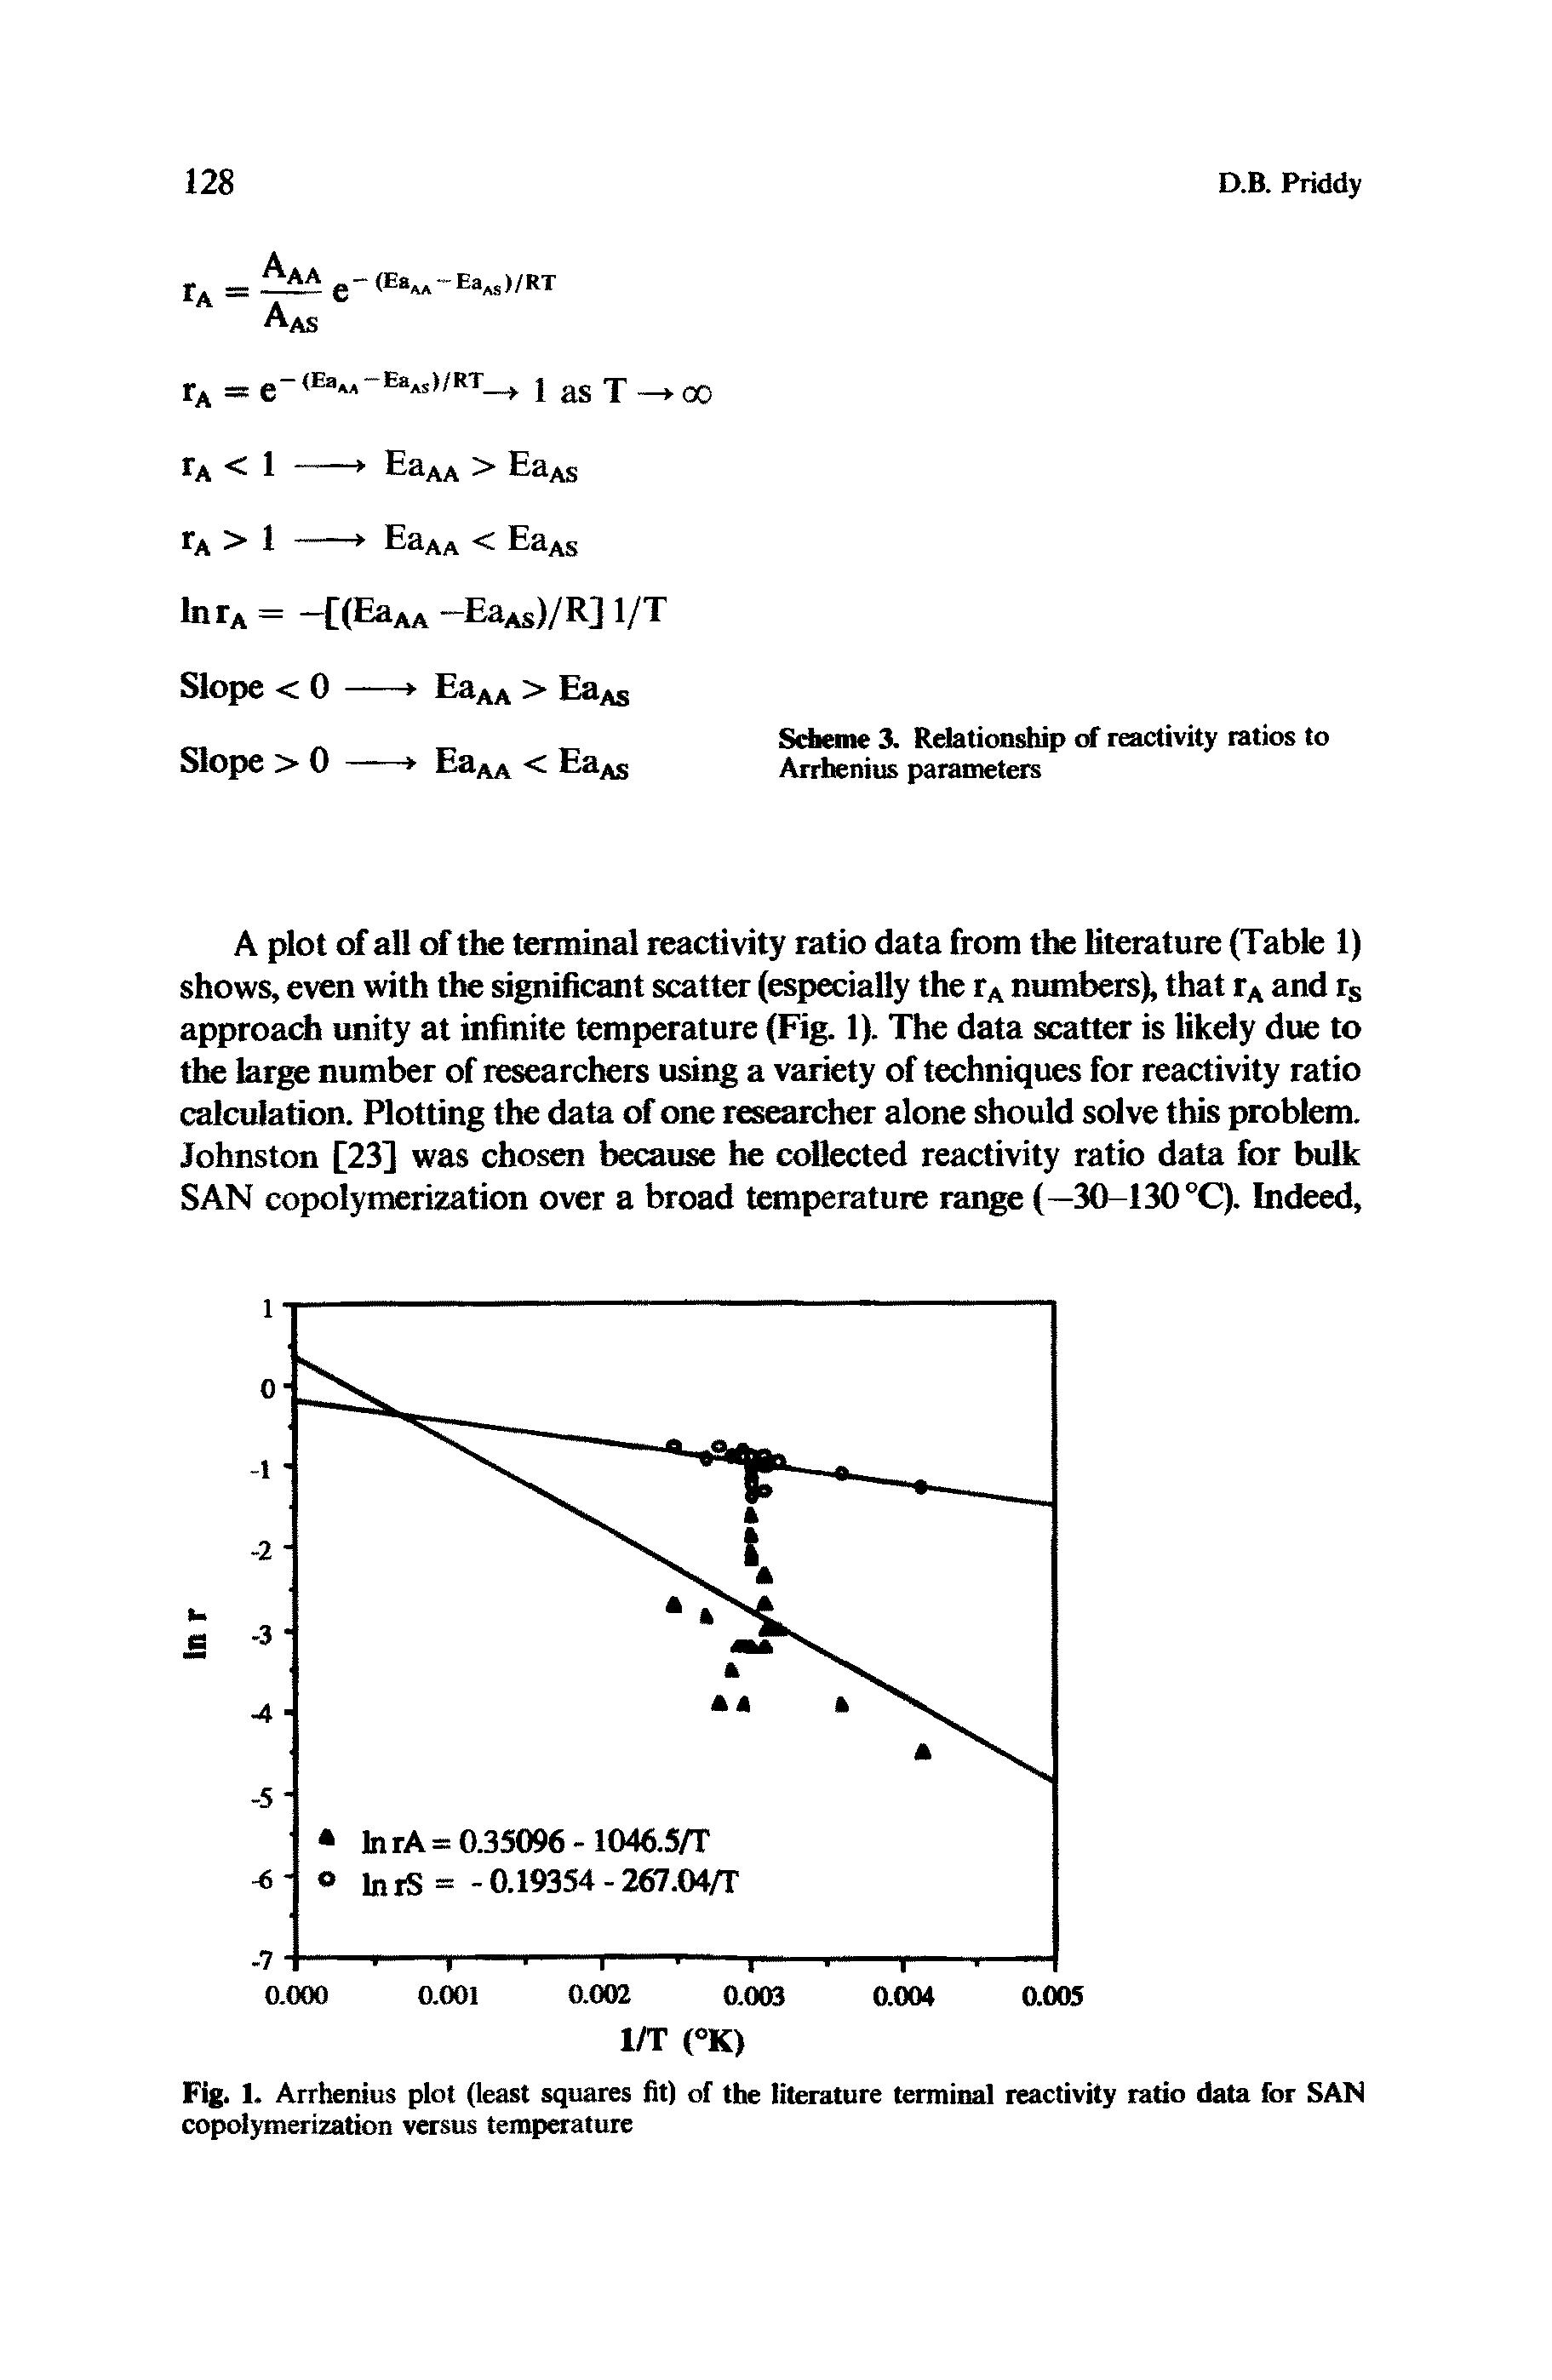 Fig. 1. Arrhenius plot (least squares fit) of the literature terminal reactivity ratio data for SAN copolymerization versus temperature...